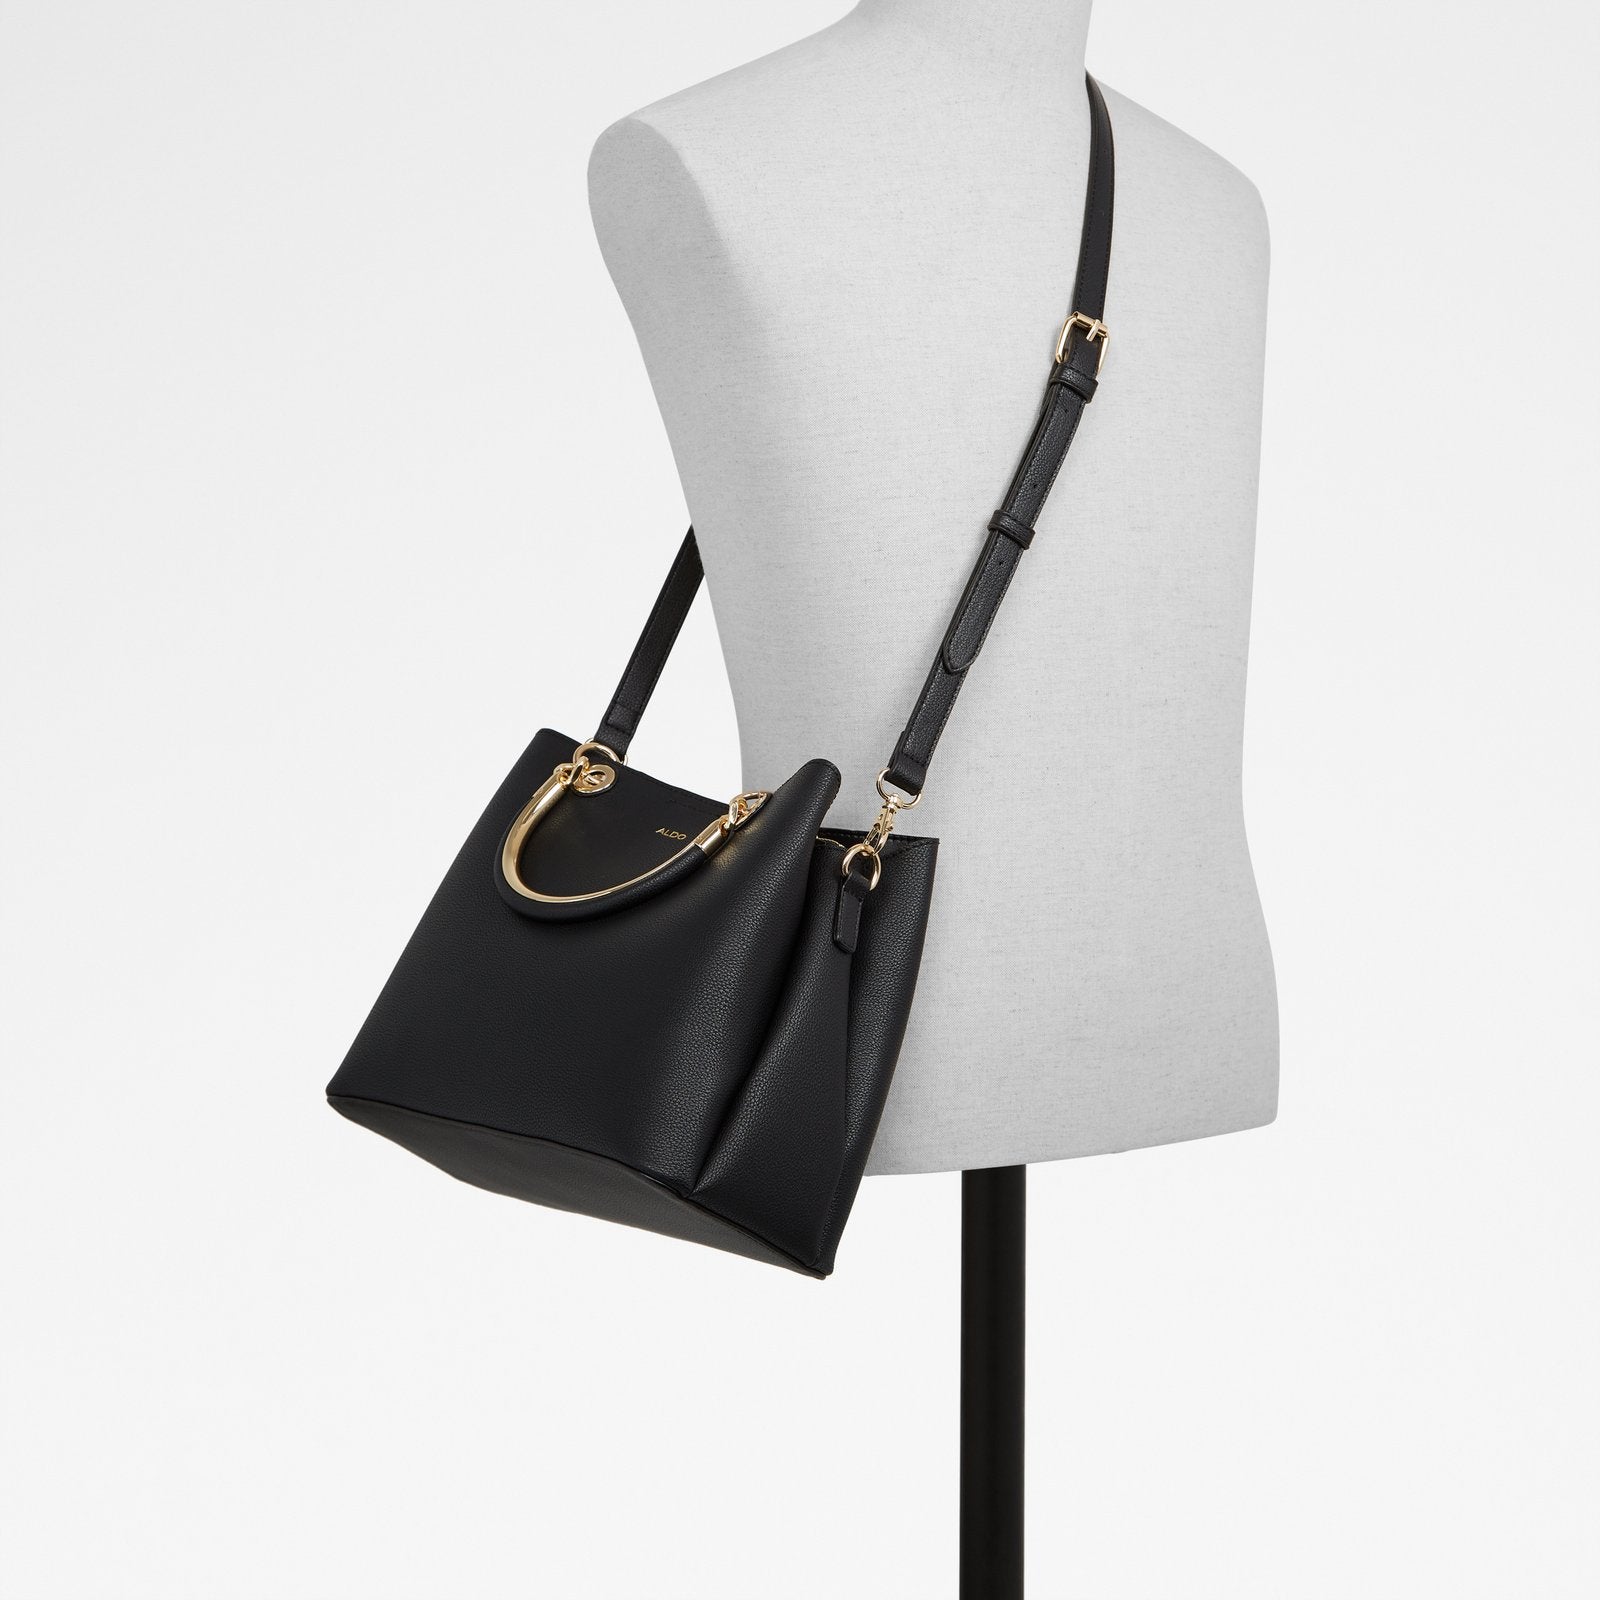 Surgoine / Handbag Bag - Black - ALDO KSA